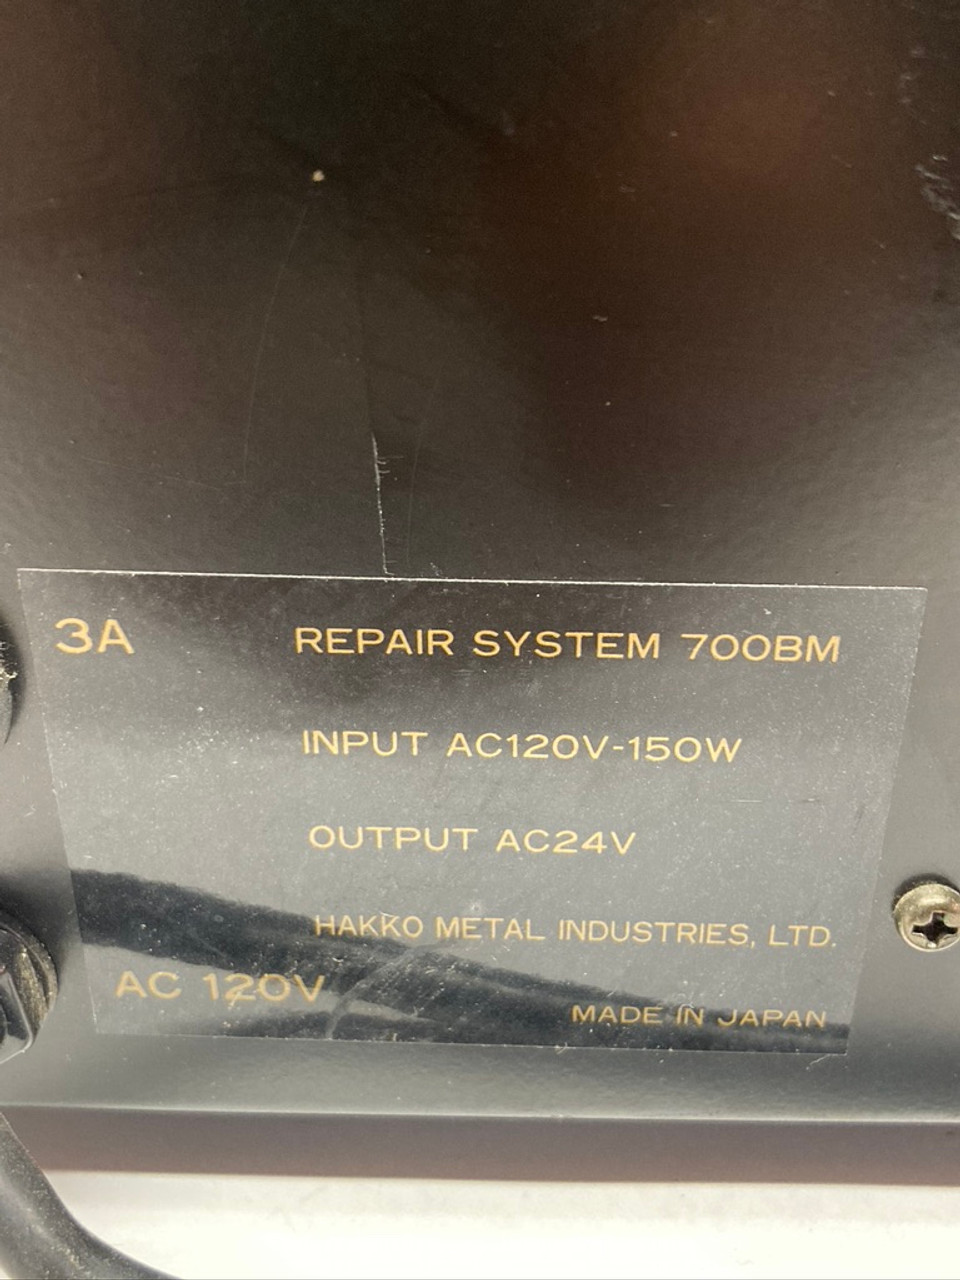 700 Desolder Repair System 700BM Hakko Metal